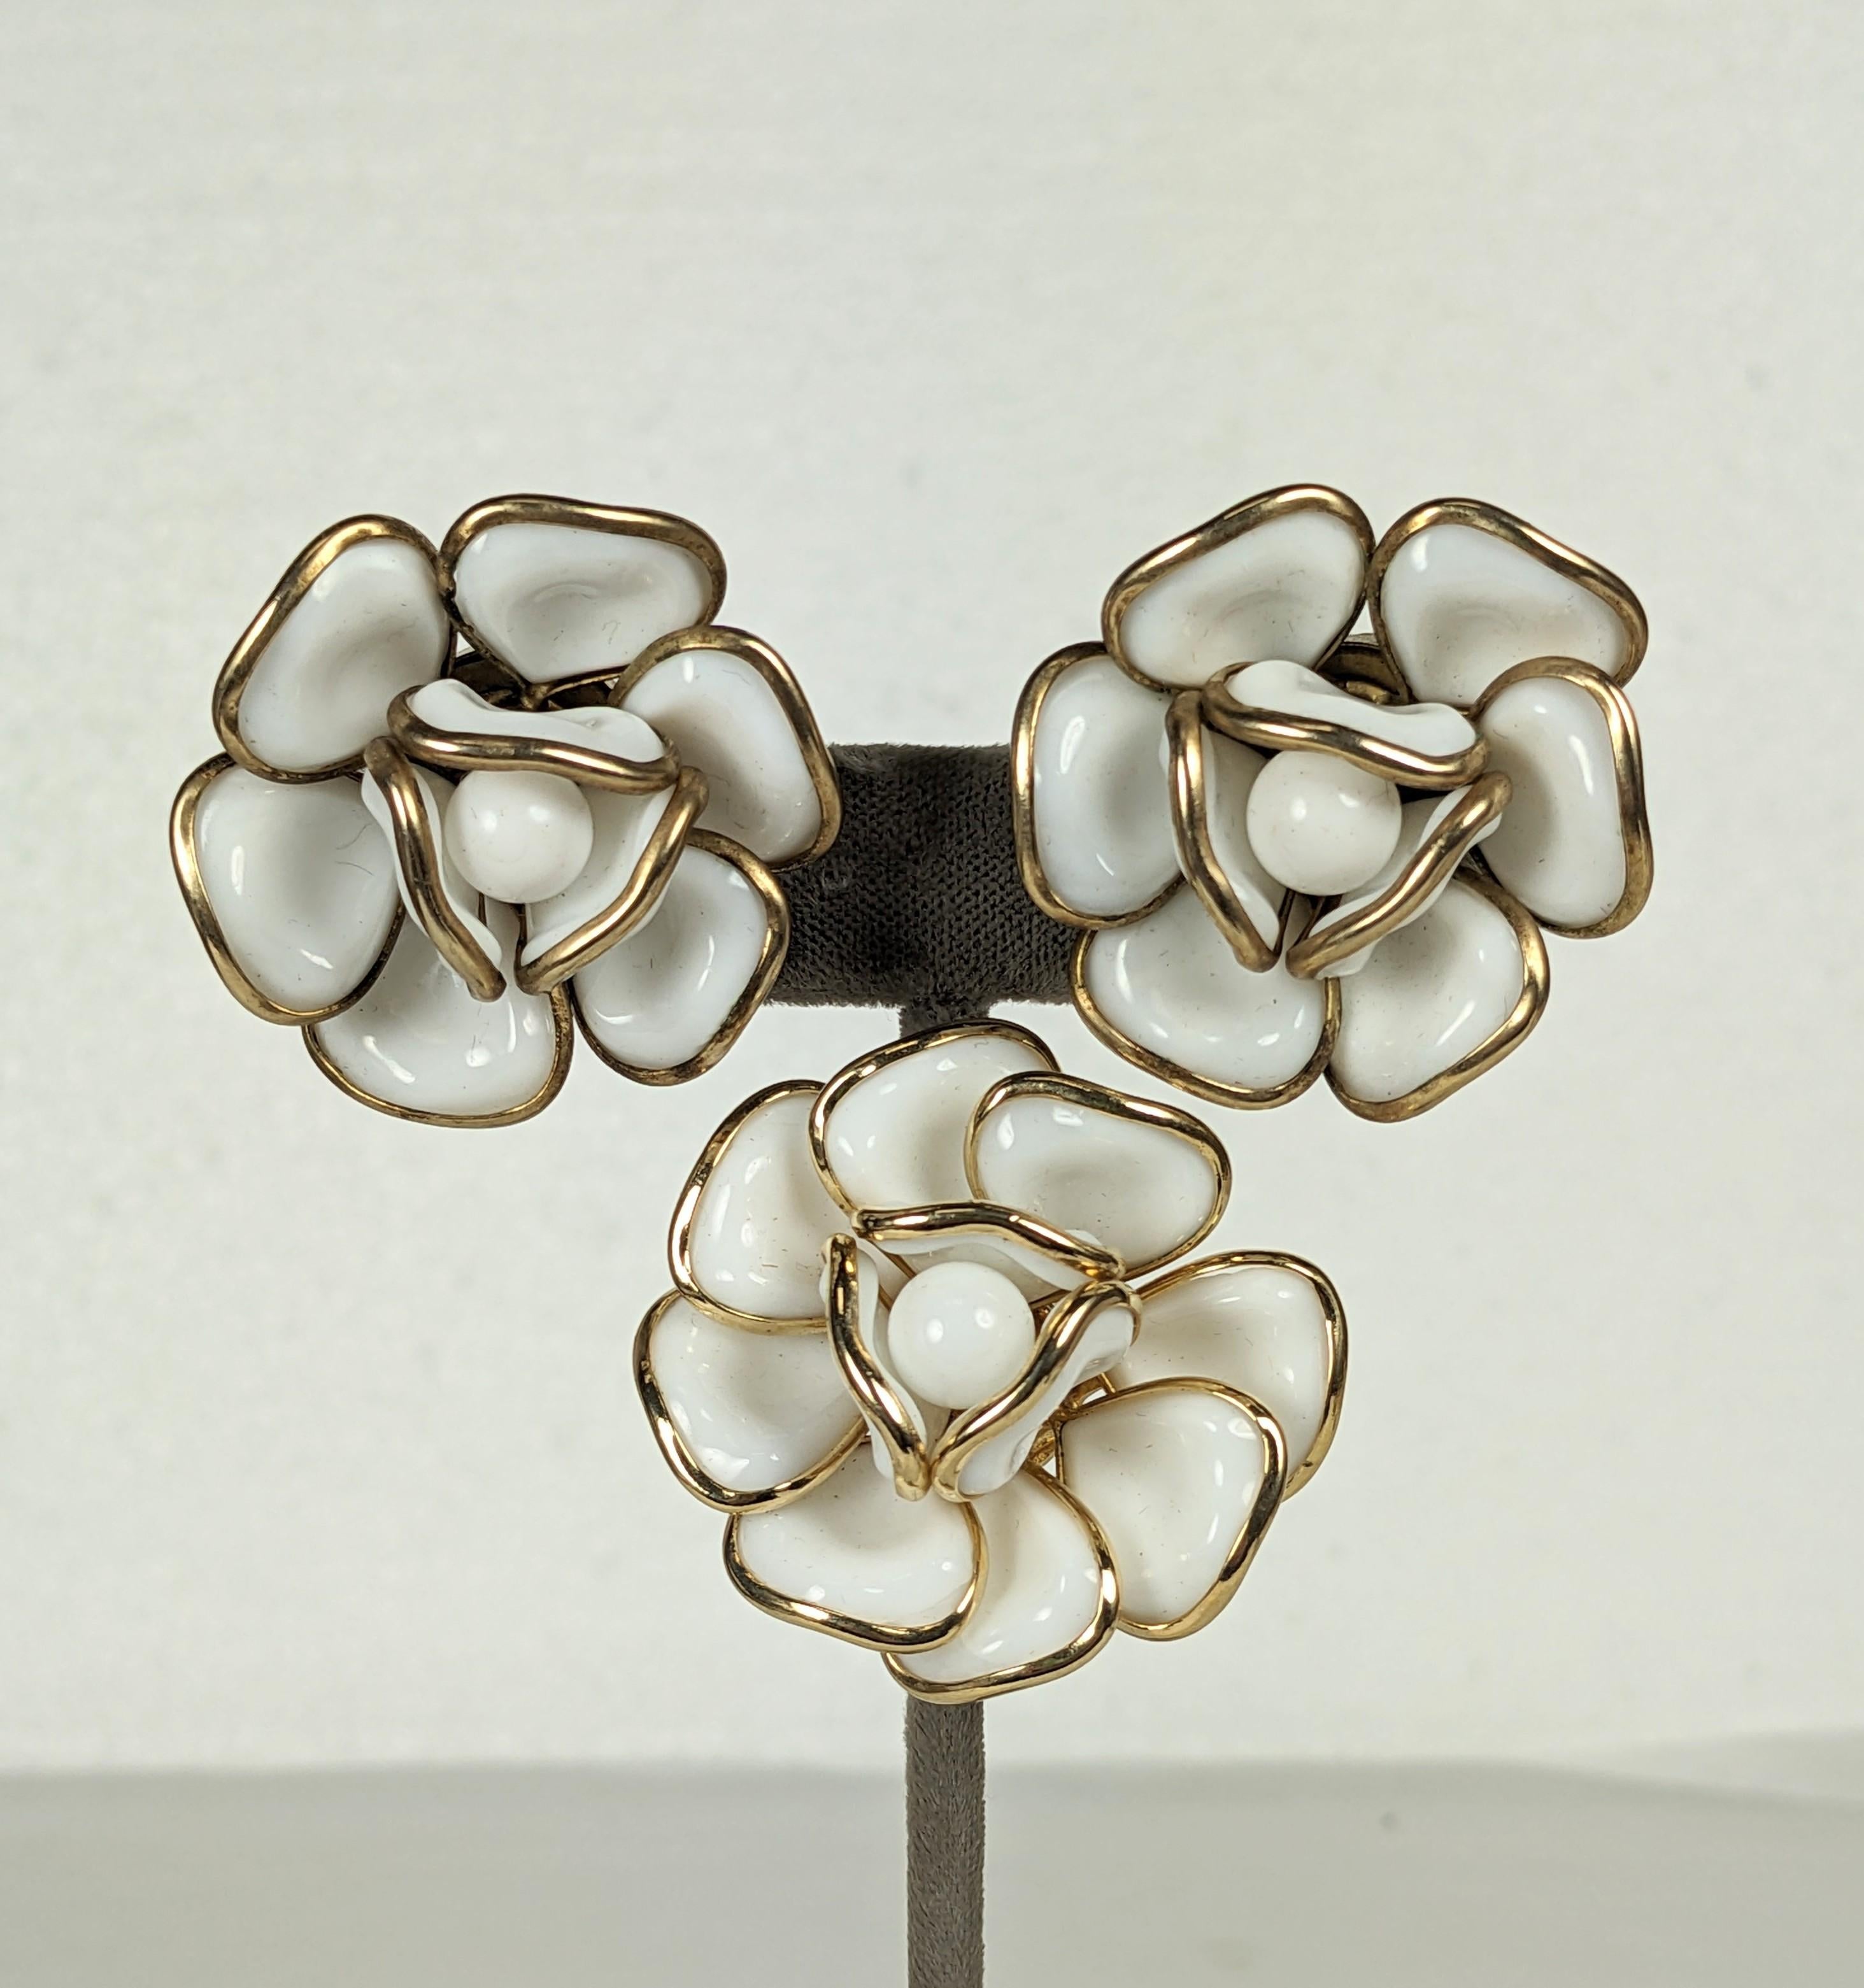 Crown Trifari demi parure von Gripoix inspirierten weißen Milchglas Lünette gesetzt geformten Kamelienblüten. Set bestehend aus einer Brosche und Ohrclips, 1950er Jahre USA. 
Ausgezeichneter Zustand, signiert. Brosche 1,5